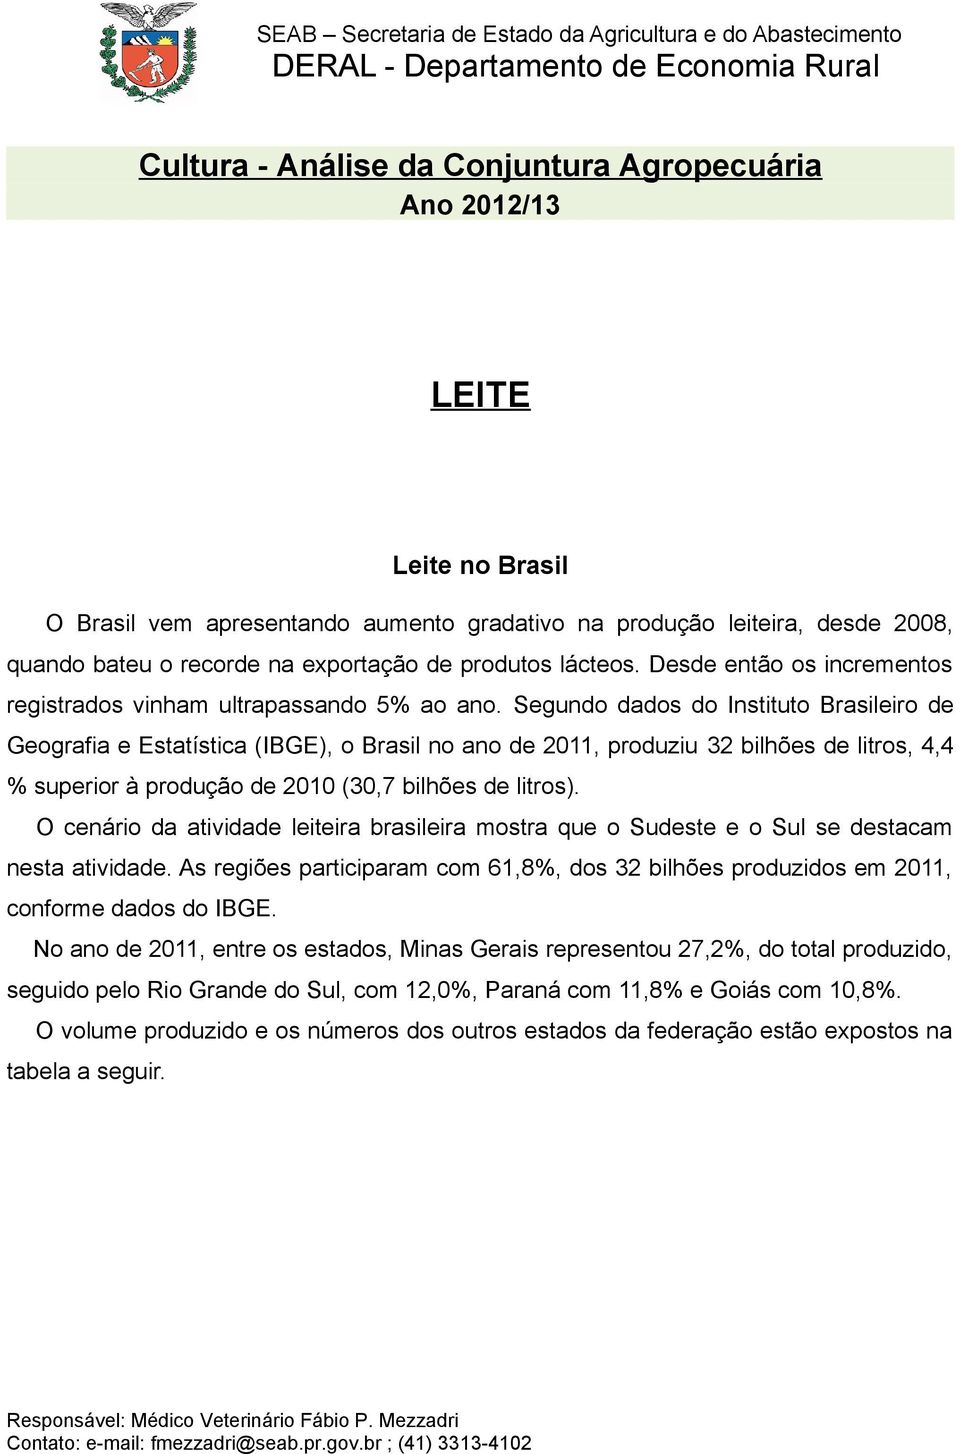 Segundo dados do Instituto Brasileiro de Geografia e Estatística (IBGE), o Brasil no ano de 2011, produziu 32 bilhões de litros, 4,4 % superior à produção de 2010 (30,7 bilhões de litros).